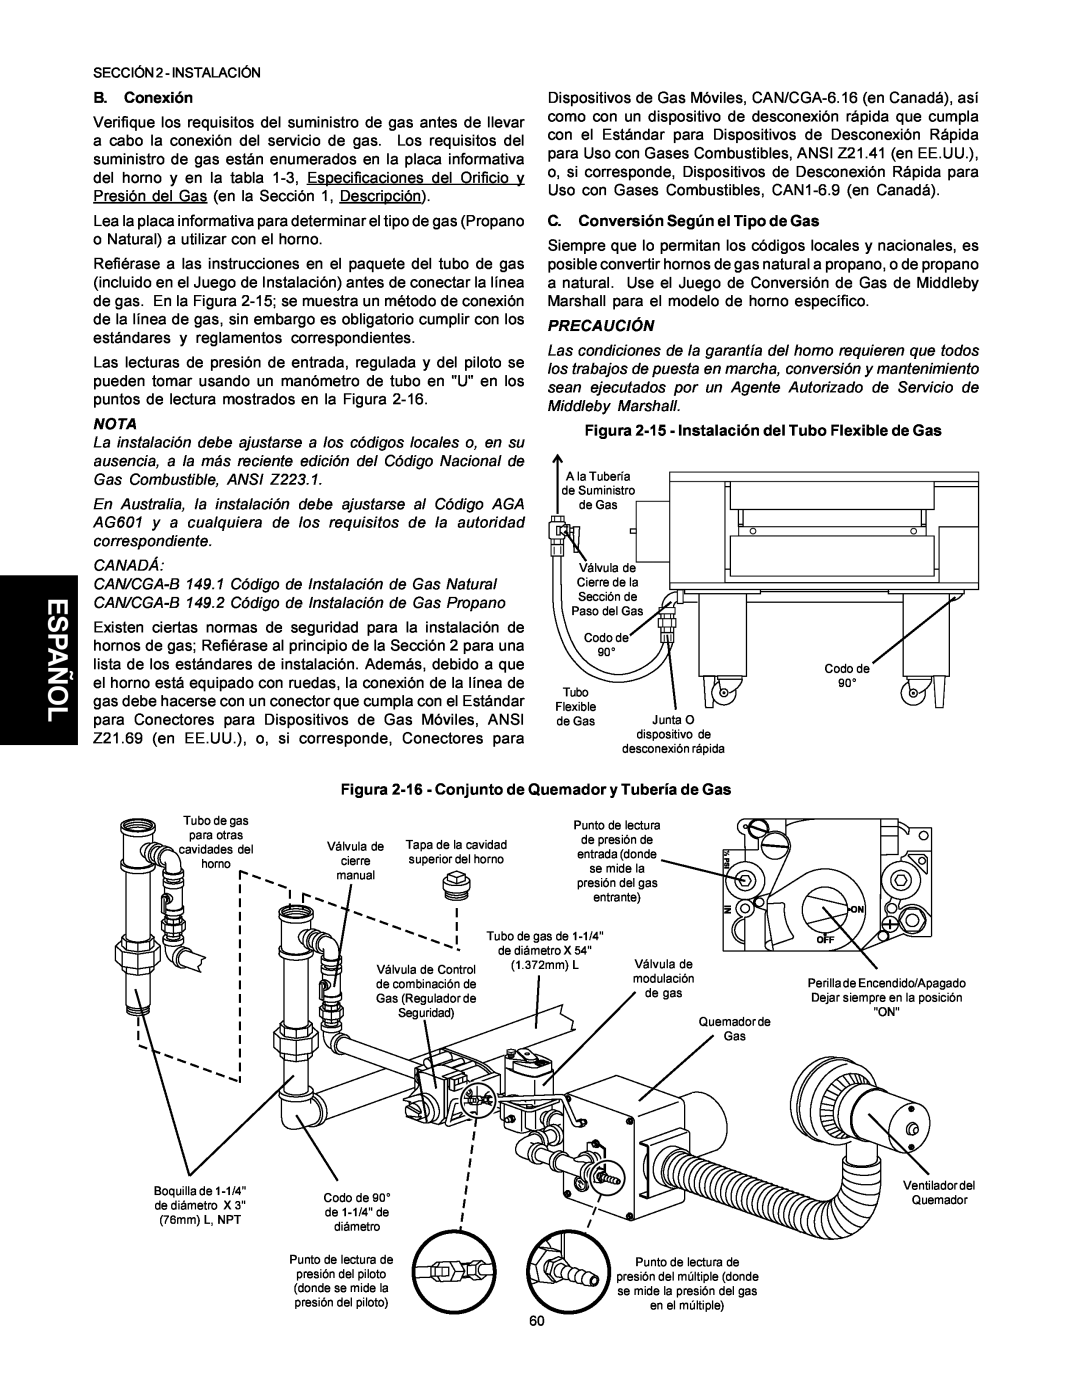 Middleby Marshall PS500 installation manual Español, B. Conexión, Nota, C. Conversión Según el Tipo de Gas, Precaución 